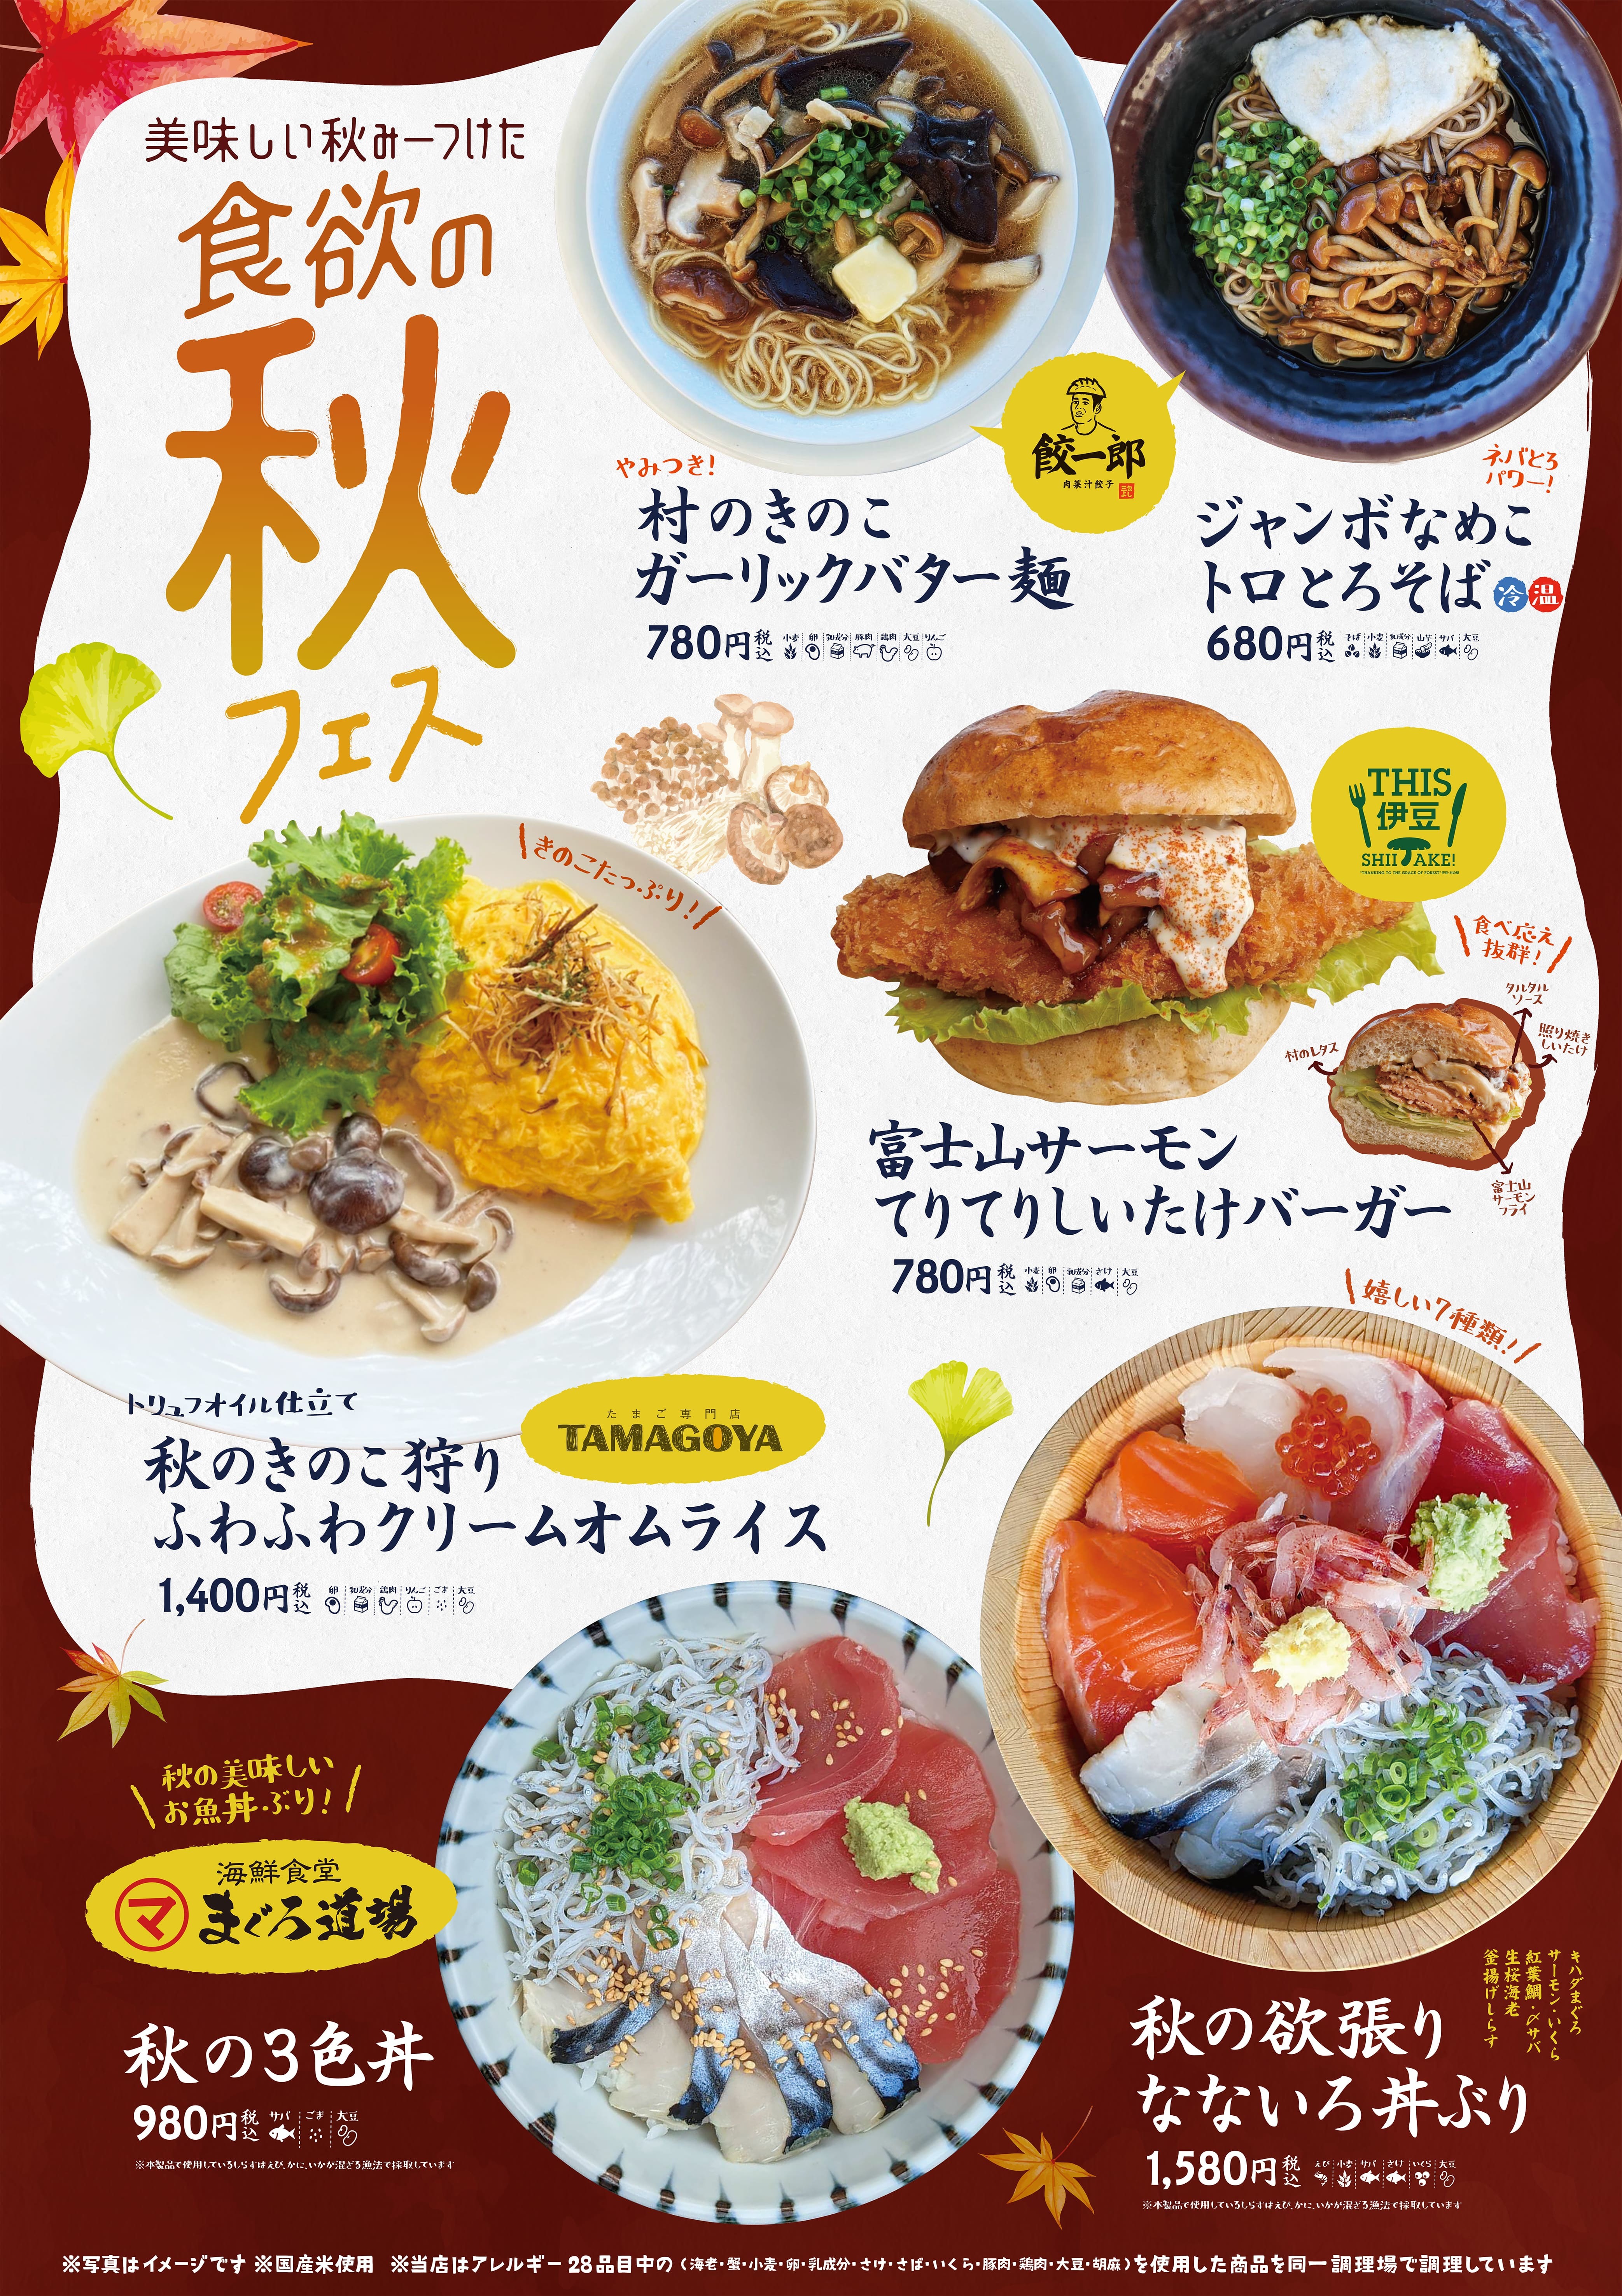 きのこだ！サバだ！サーモンだ！
食のテーマパーク「伊豆・村の駅」にて
秋がテーマの新フードメニュー『食欲の秋フェス』開催！